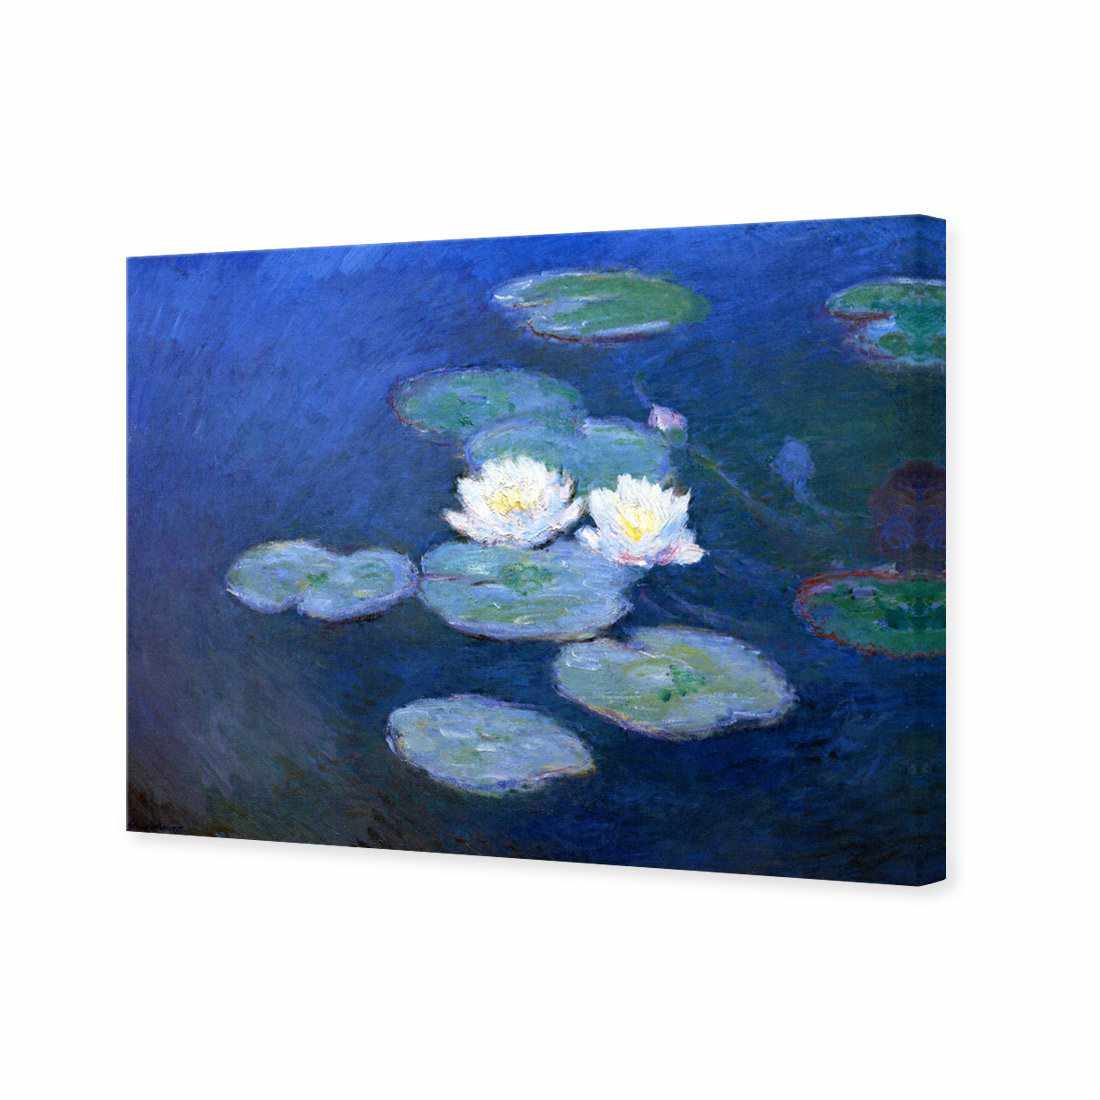 Water Lilies 7 - Monet Canvas Art-Canvas-Wall Art Designs-45x30cm-Canvas - No Frame-Wall Art Designs